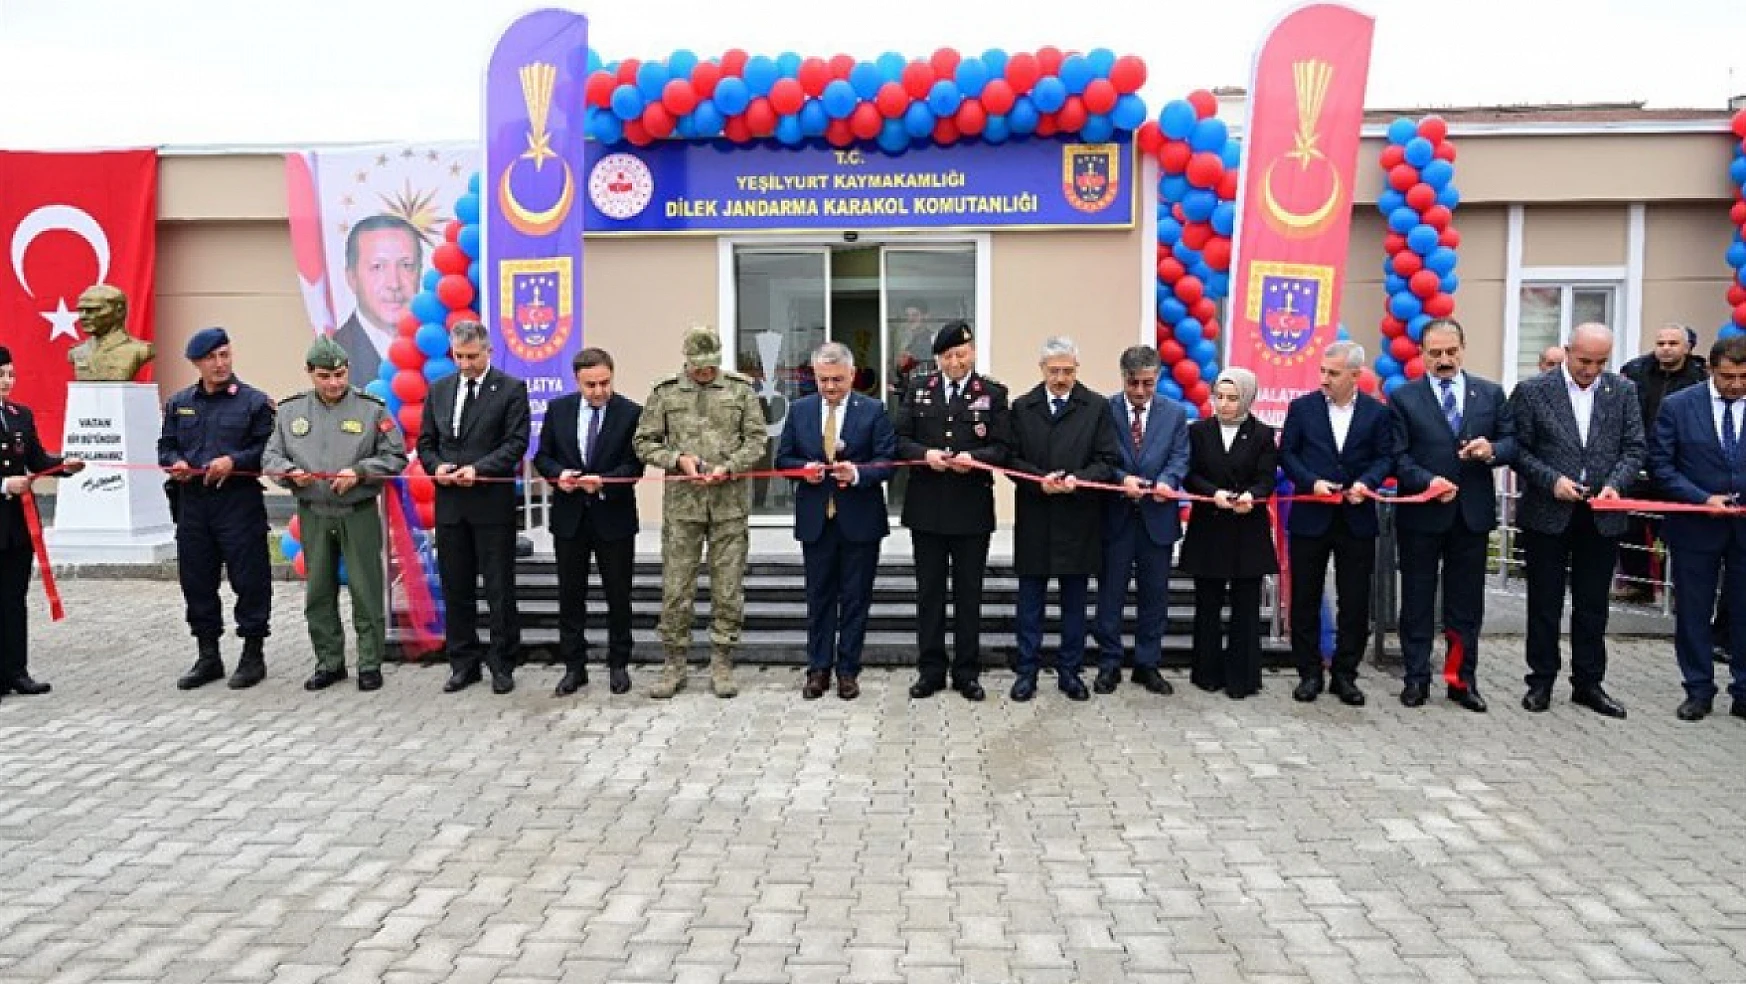 Dilek Jandarma Karakol Komutanlığı Törenle Açıldı...